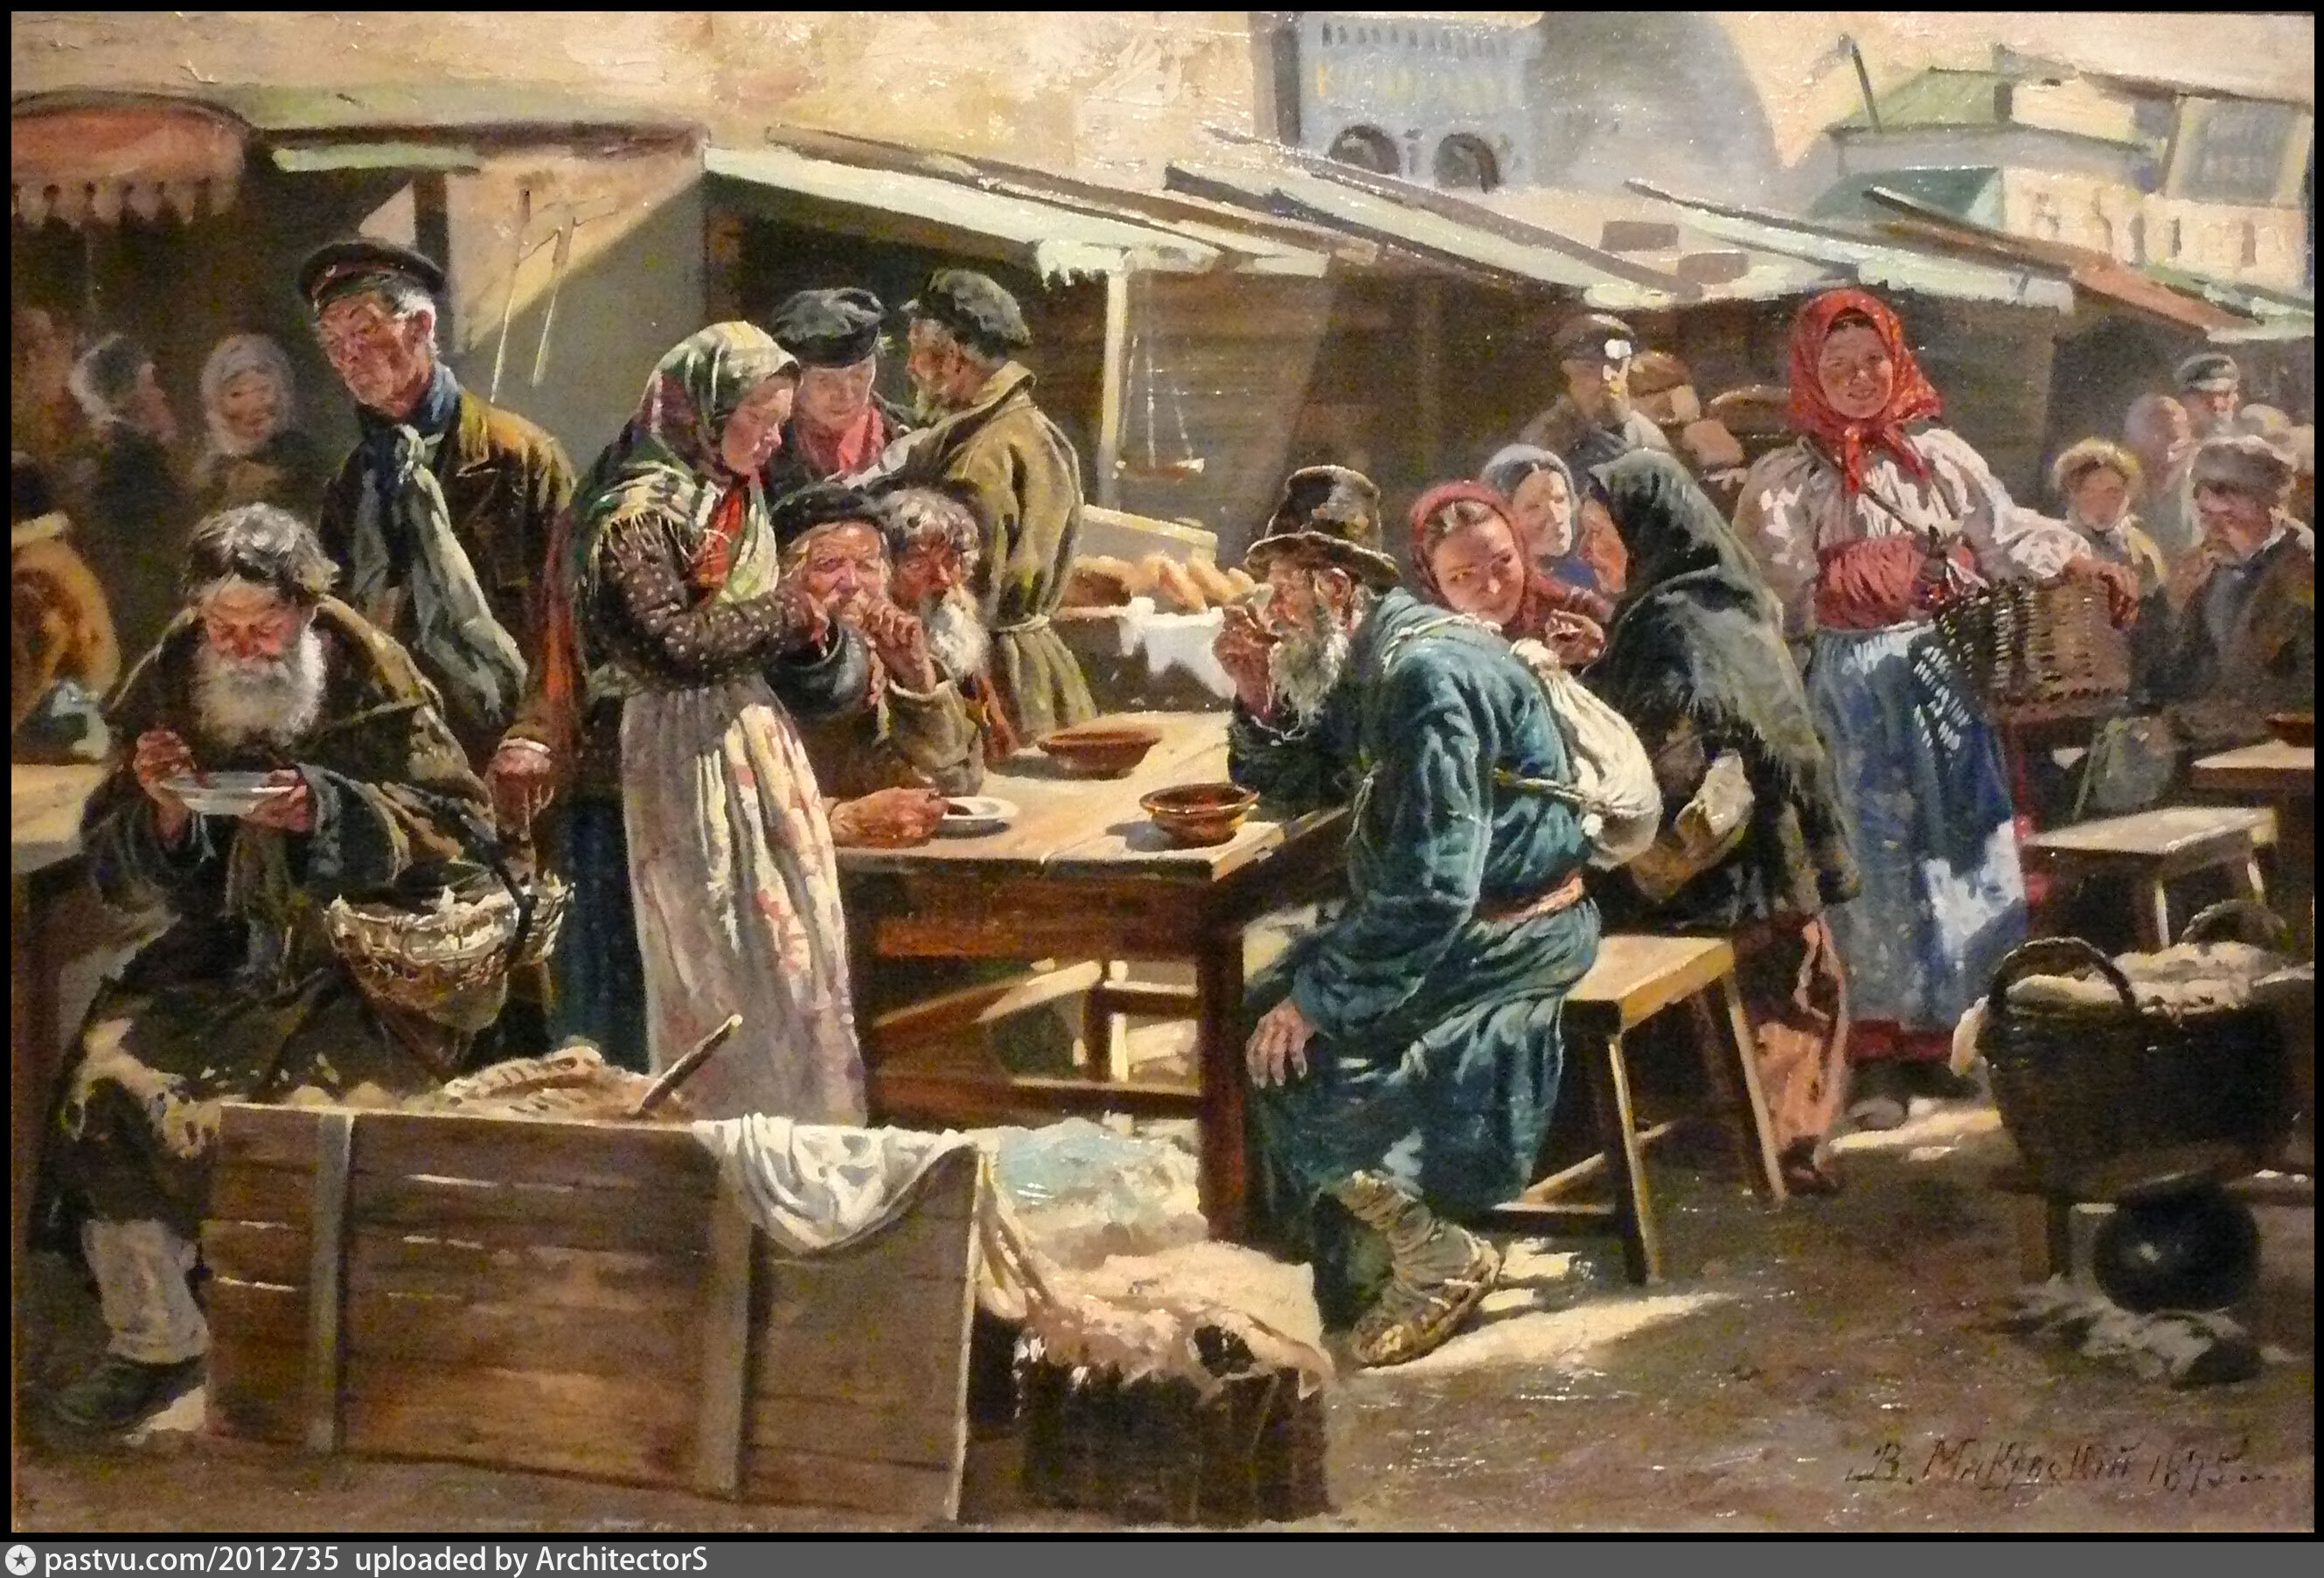 Как жили в 16 веке. Маковский толкучий рынок в Москве.